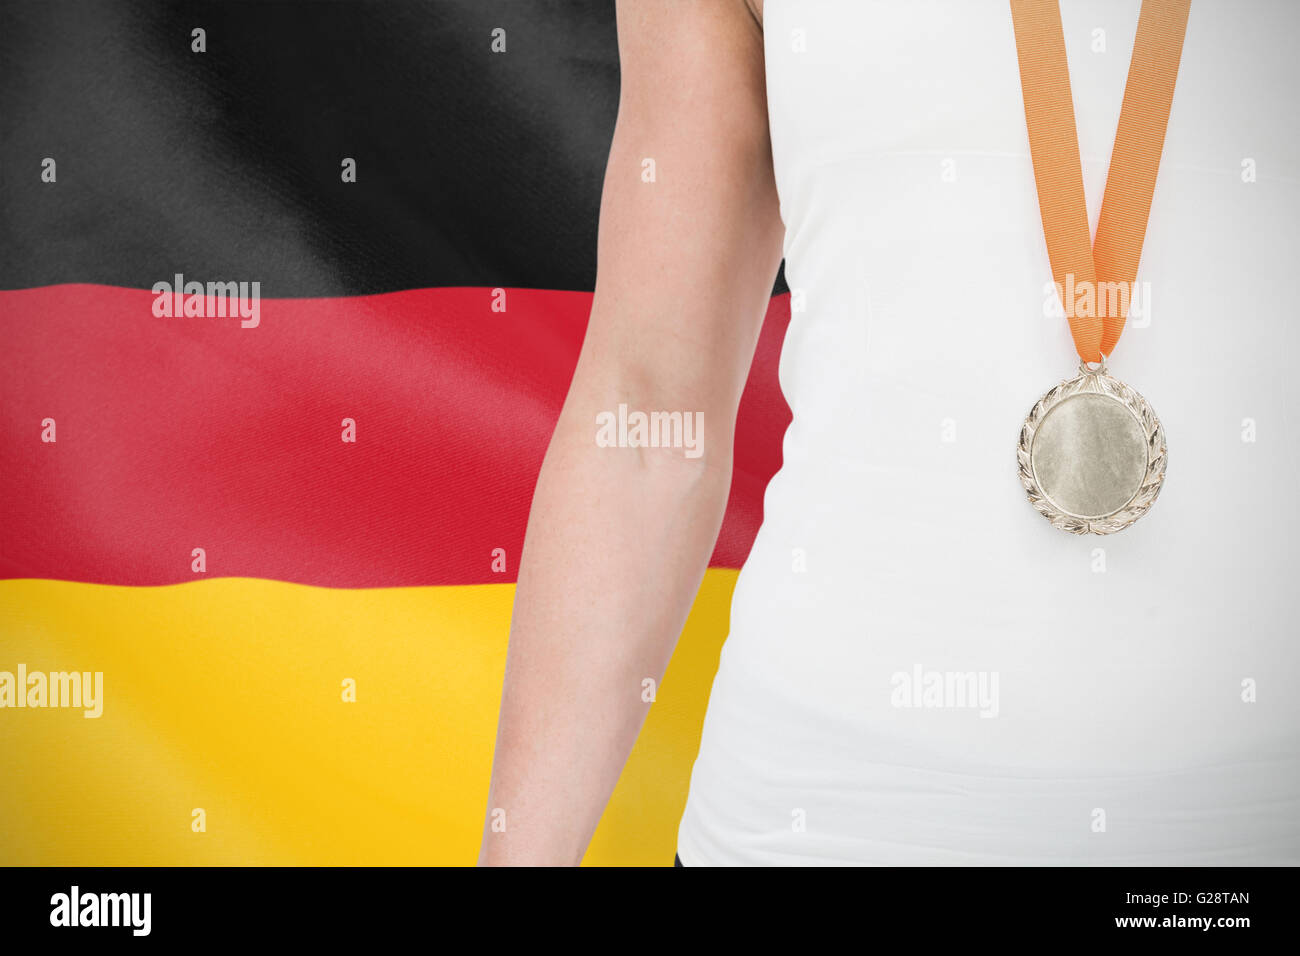 Imagen compuesta de atleta femenina vistiendo una medalla Foto de stock